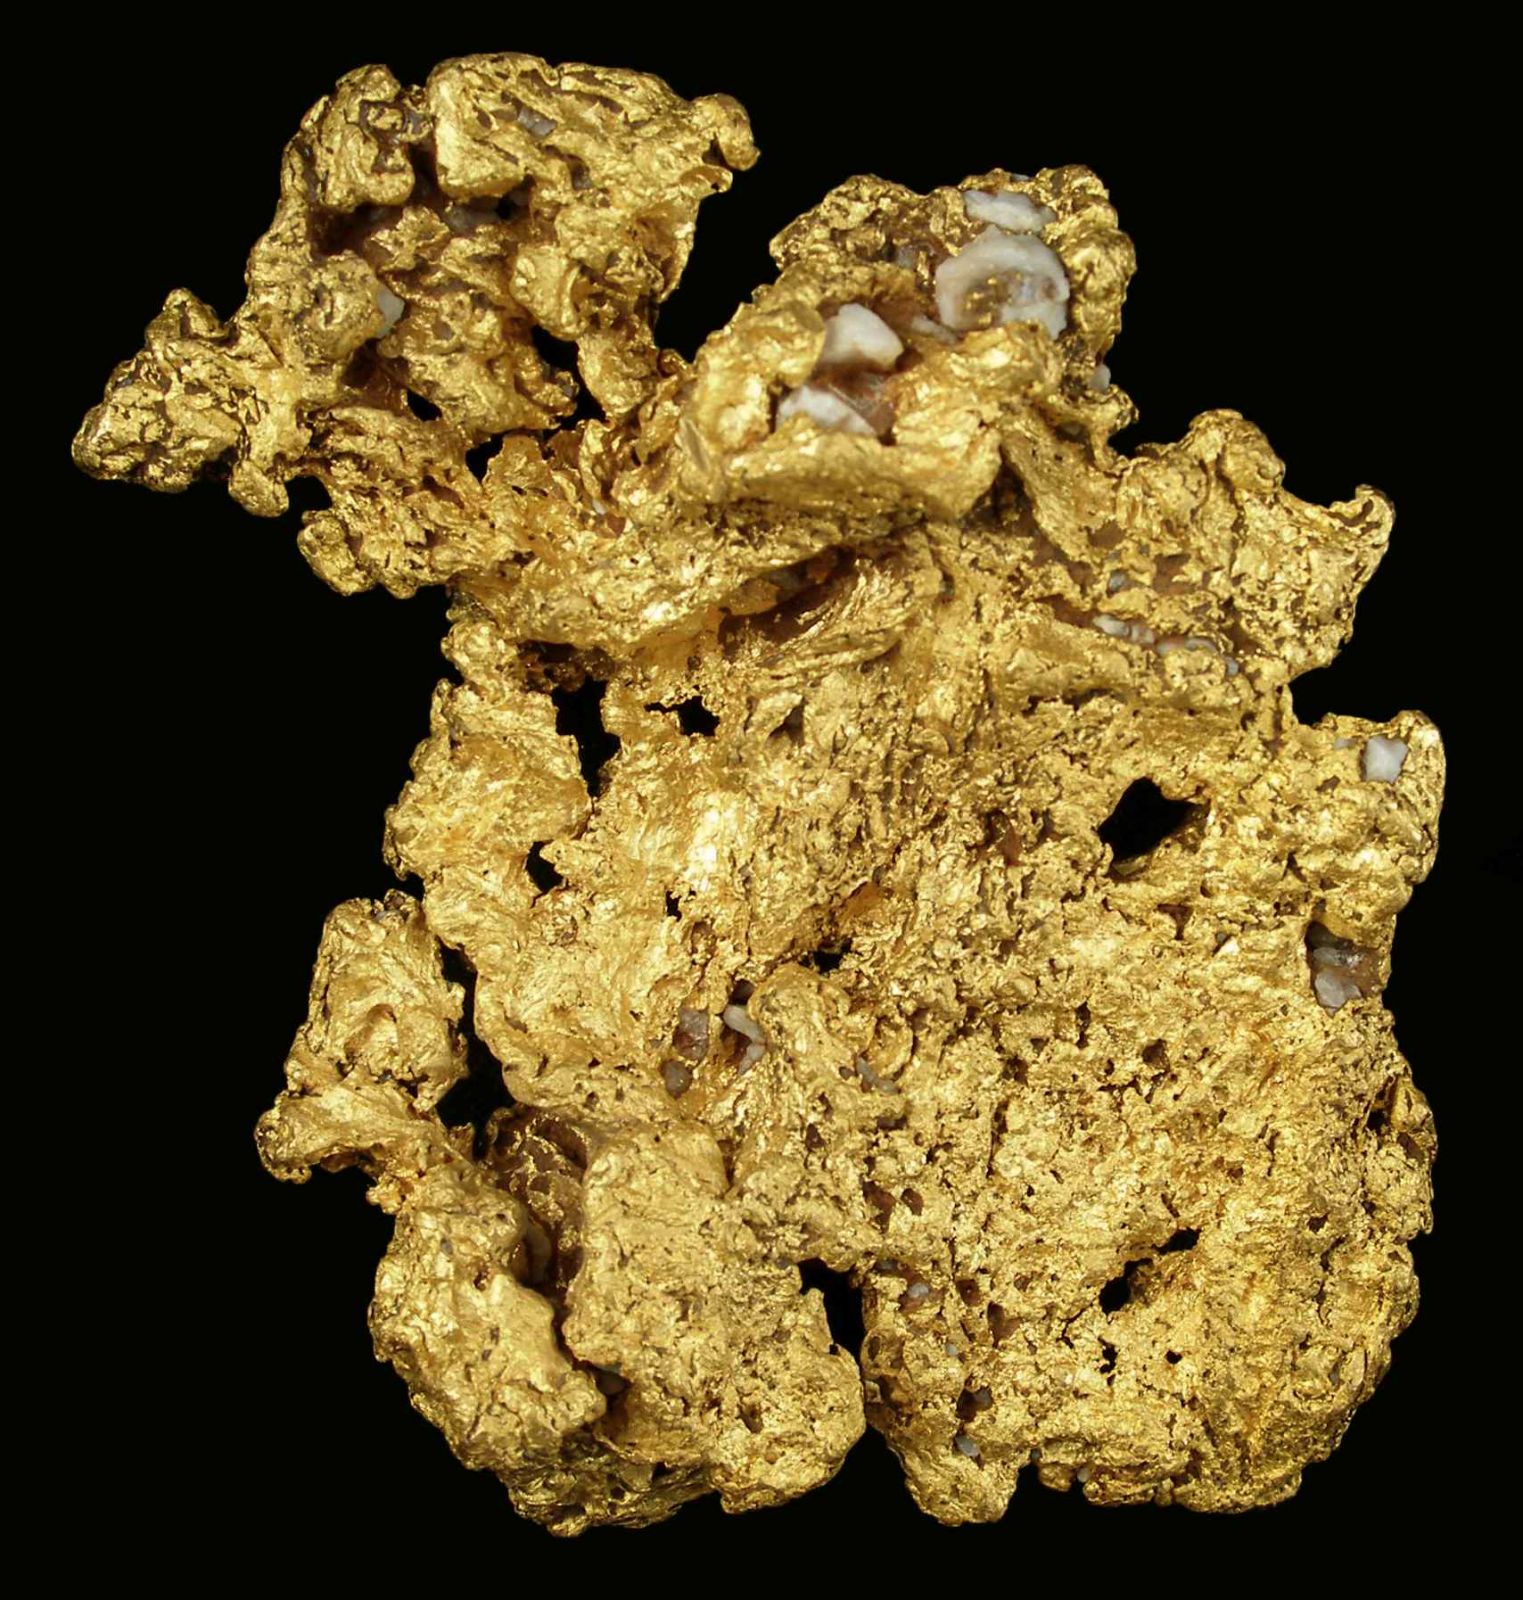 Gold - GOLD09-17 - near Bendigo - Australia Mineral Specimen